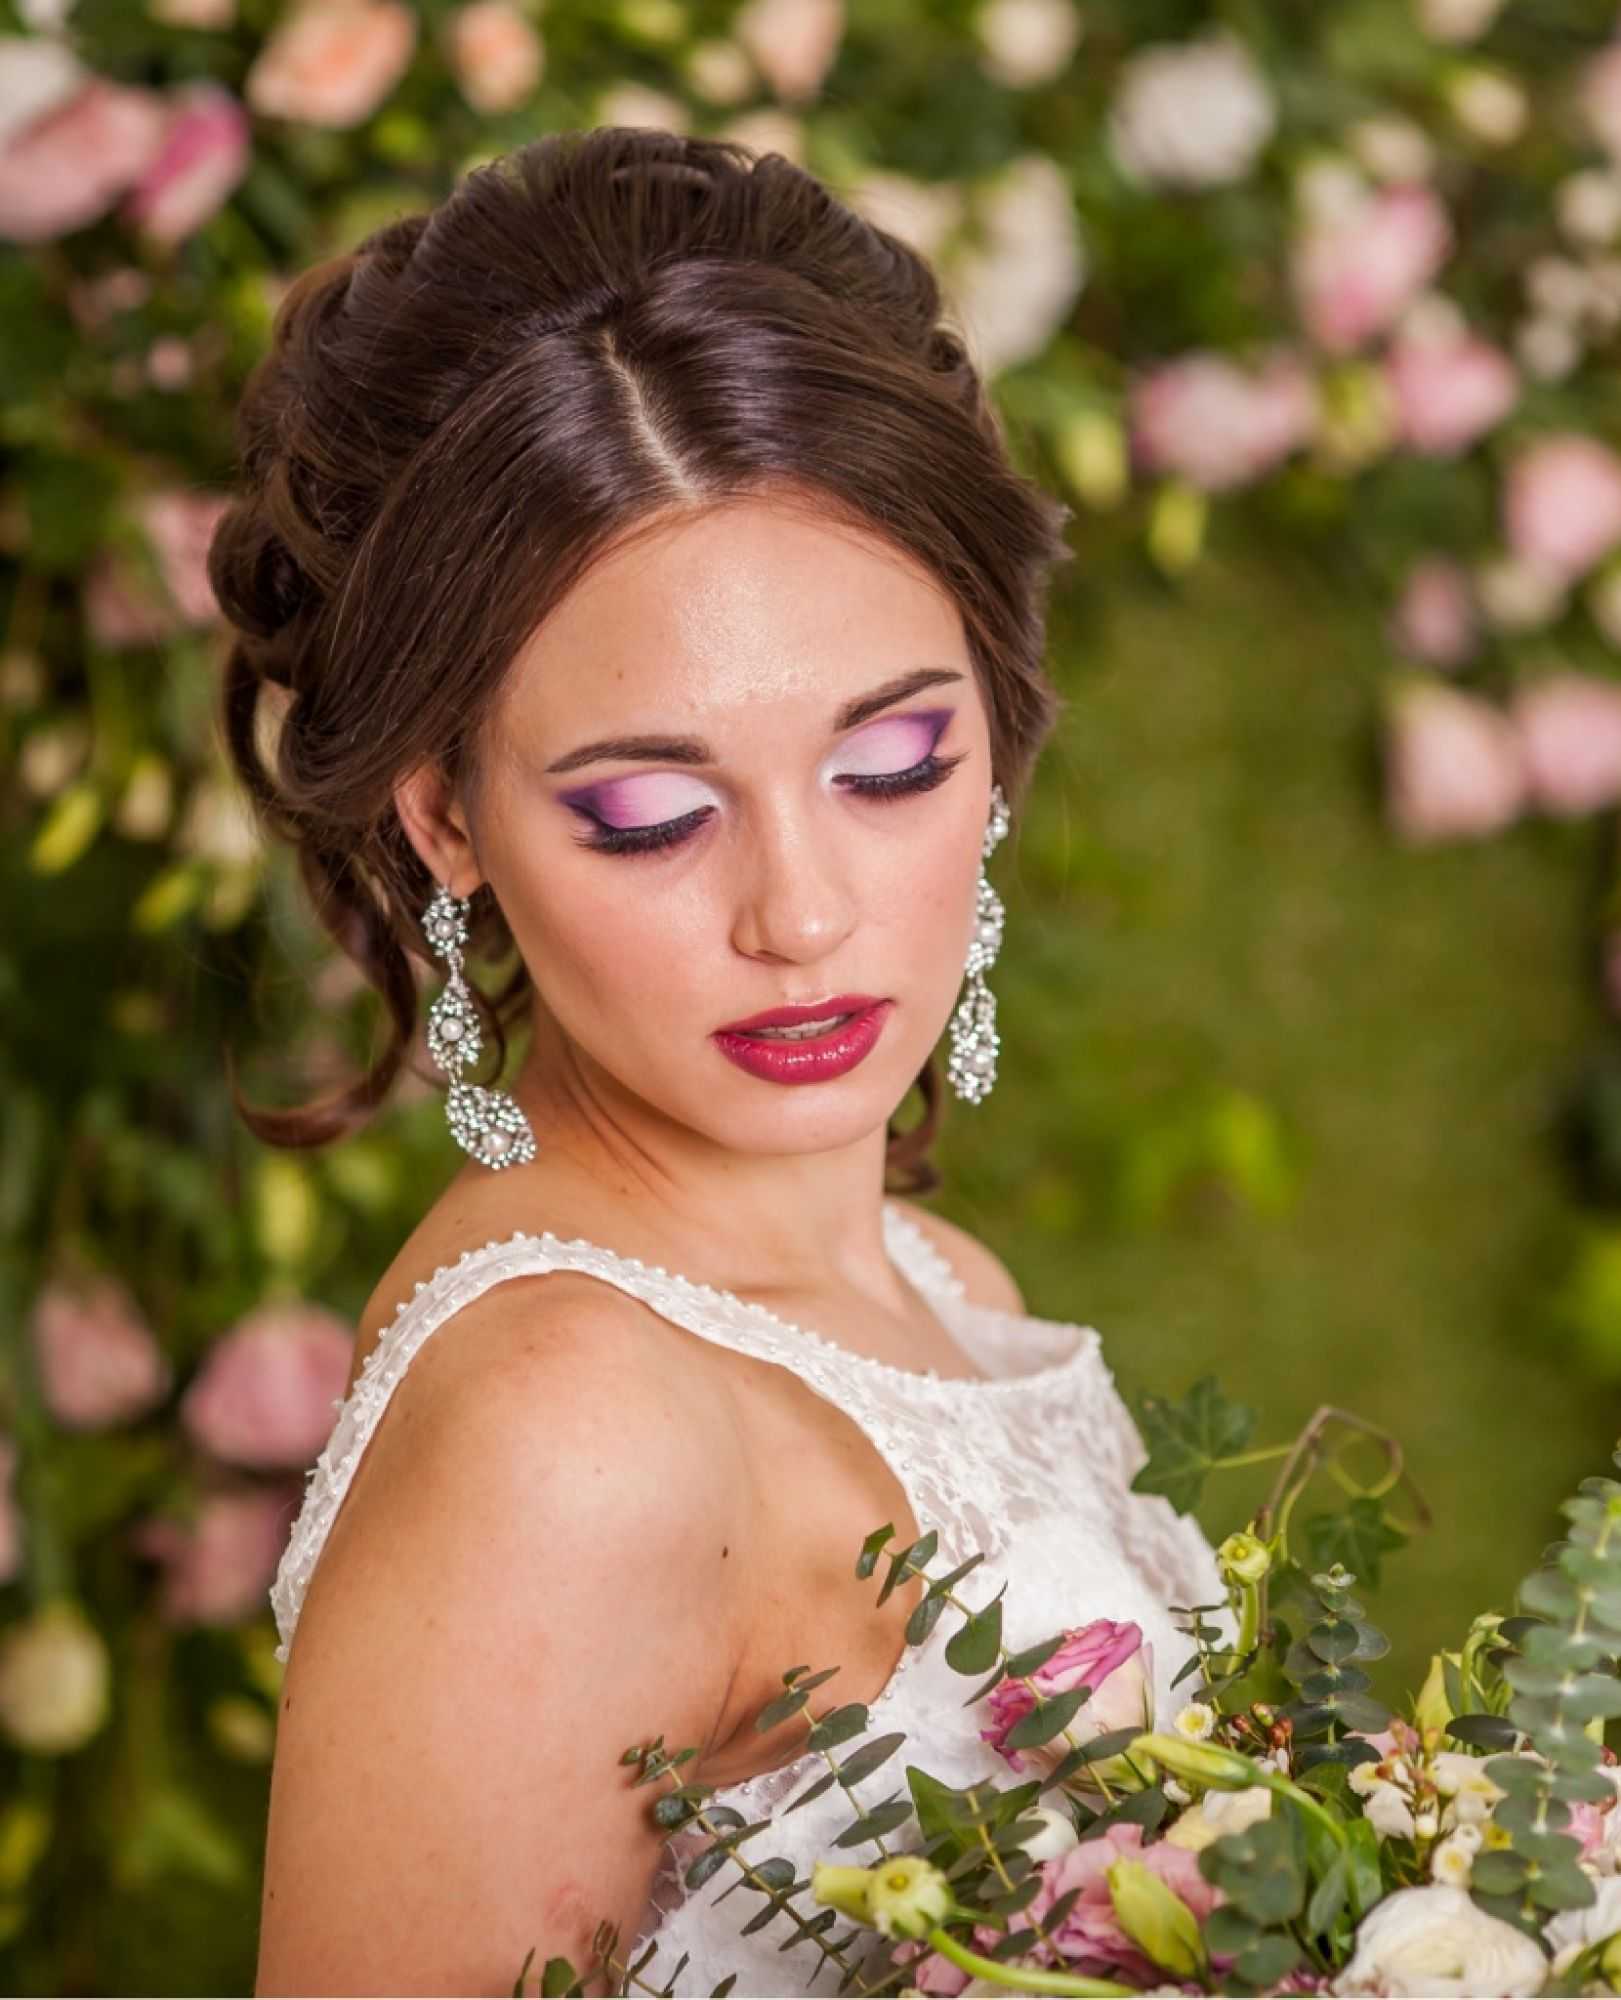 Свадебный макияж глаз на свадьбу для маленьких и больших, узких и круглых глаз на видео и фото 2022 года